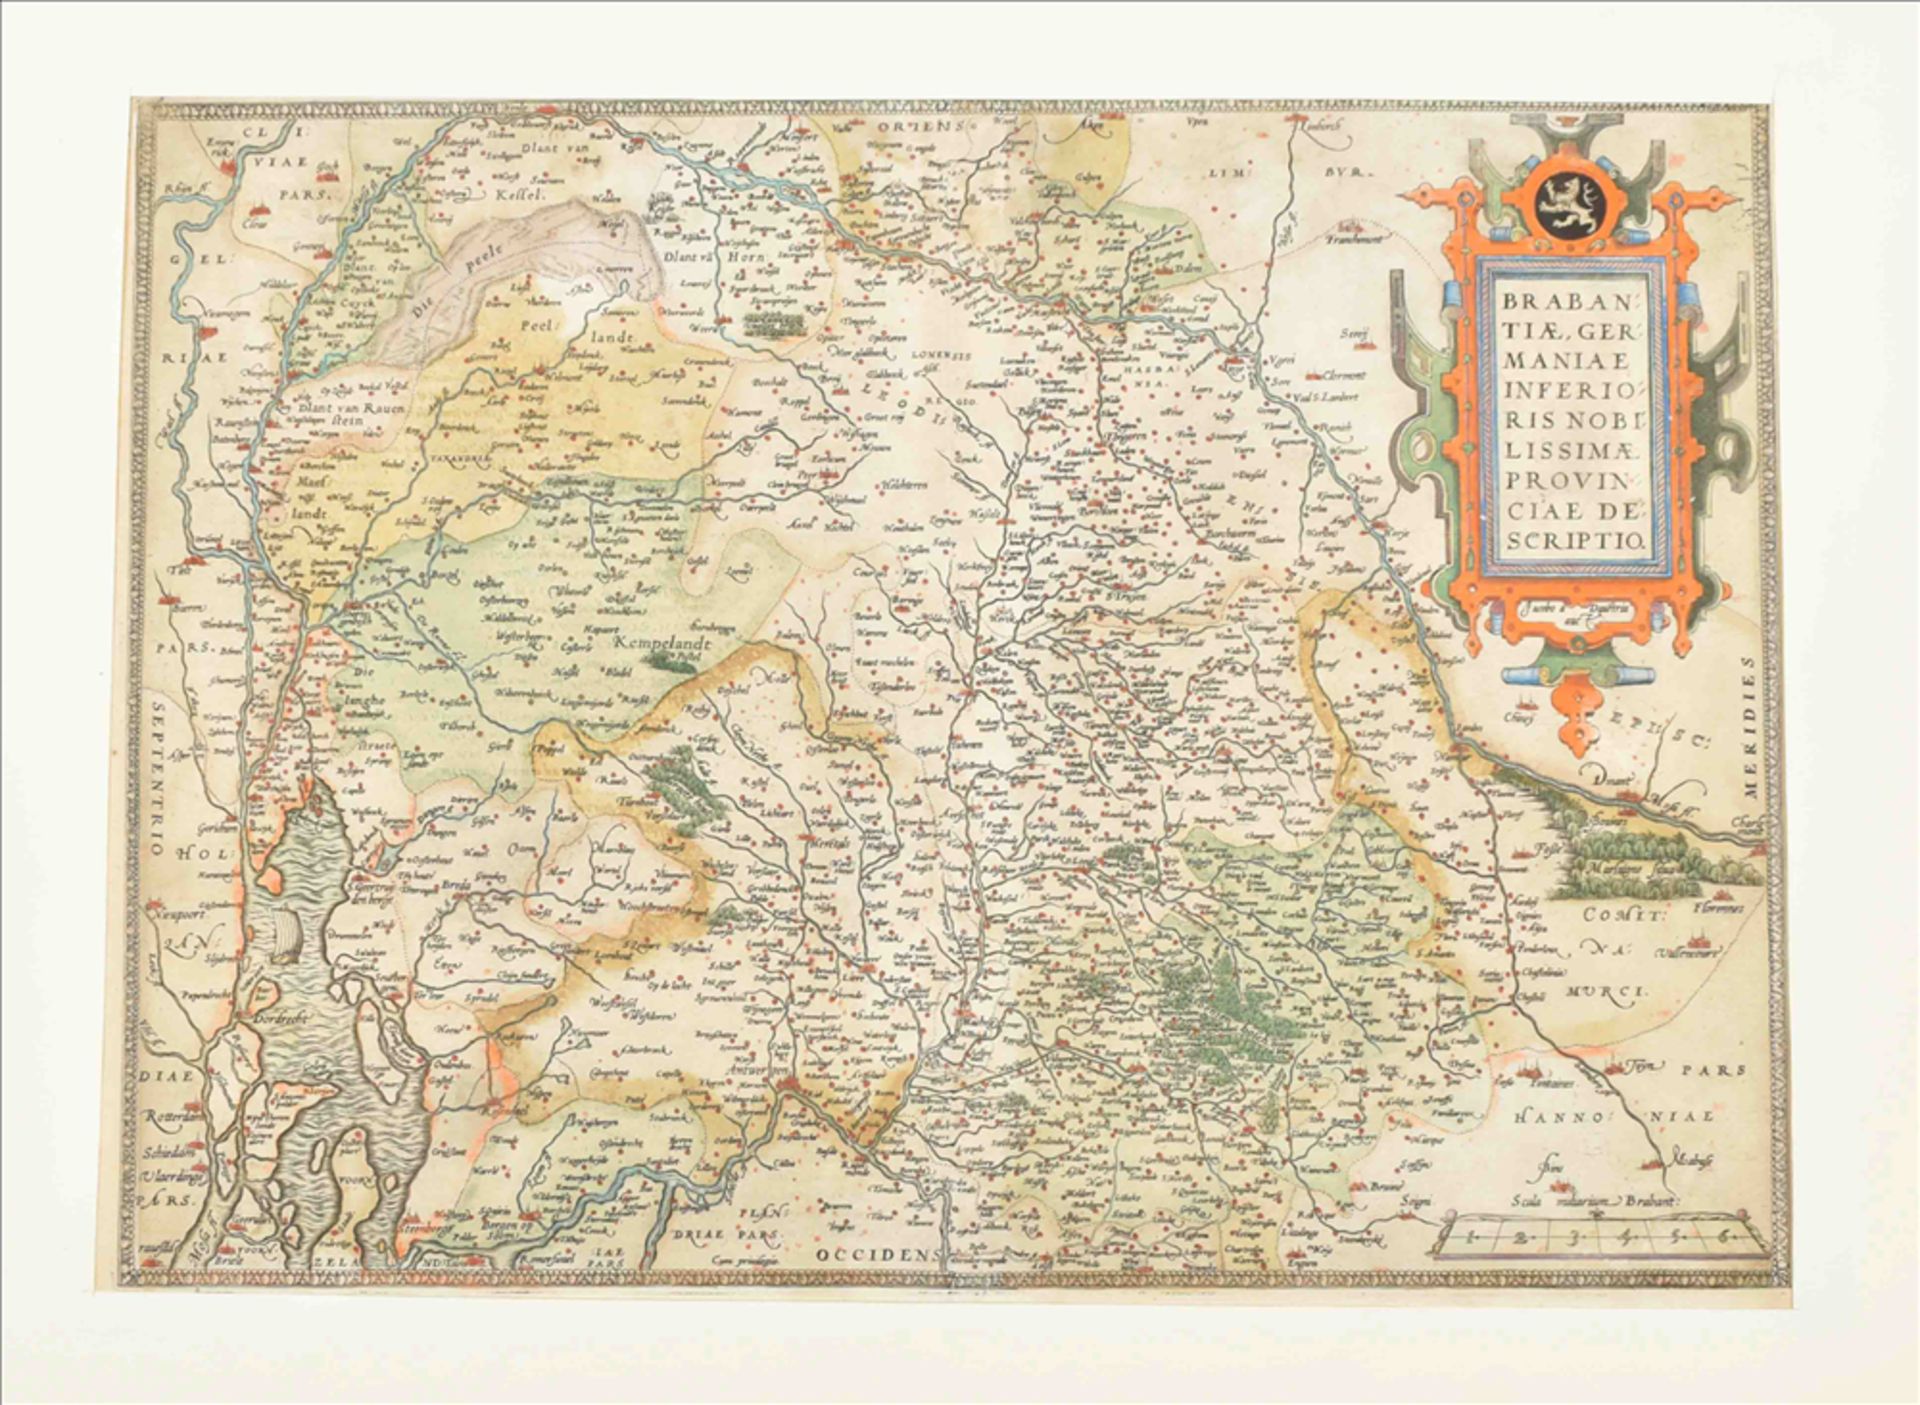 [Brabant] Ortelius. Brabantiae,